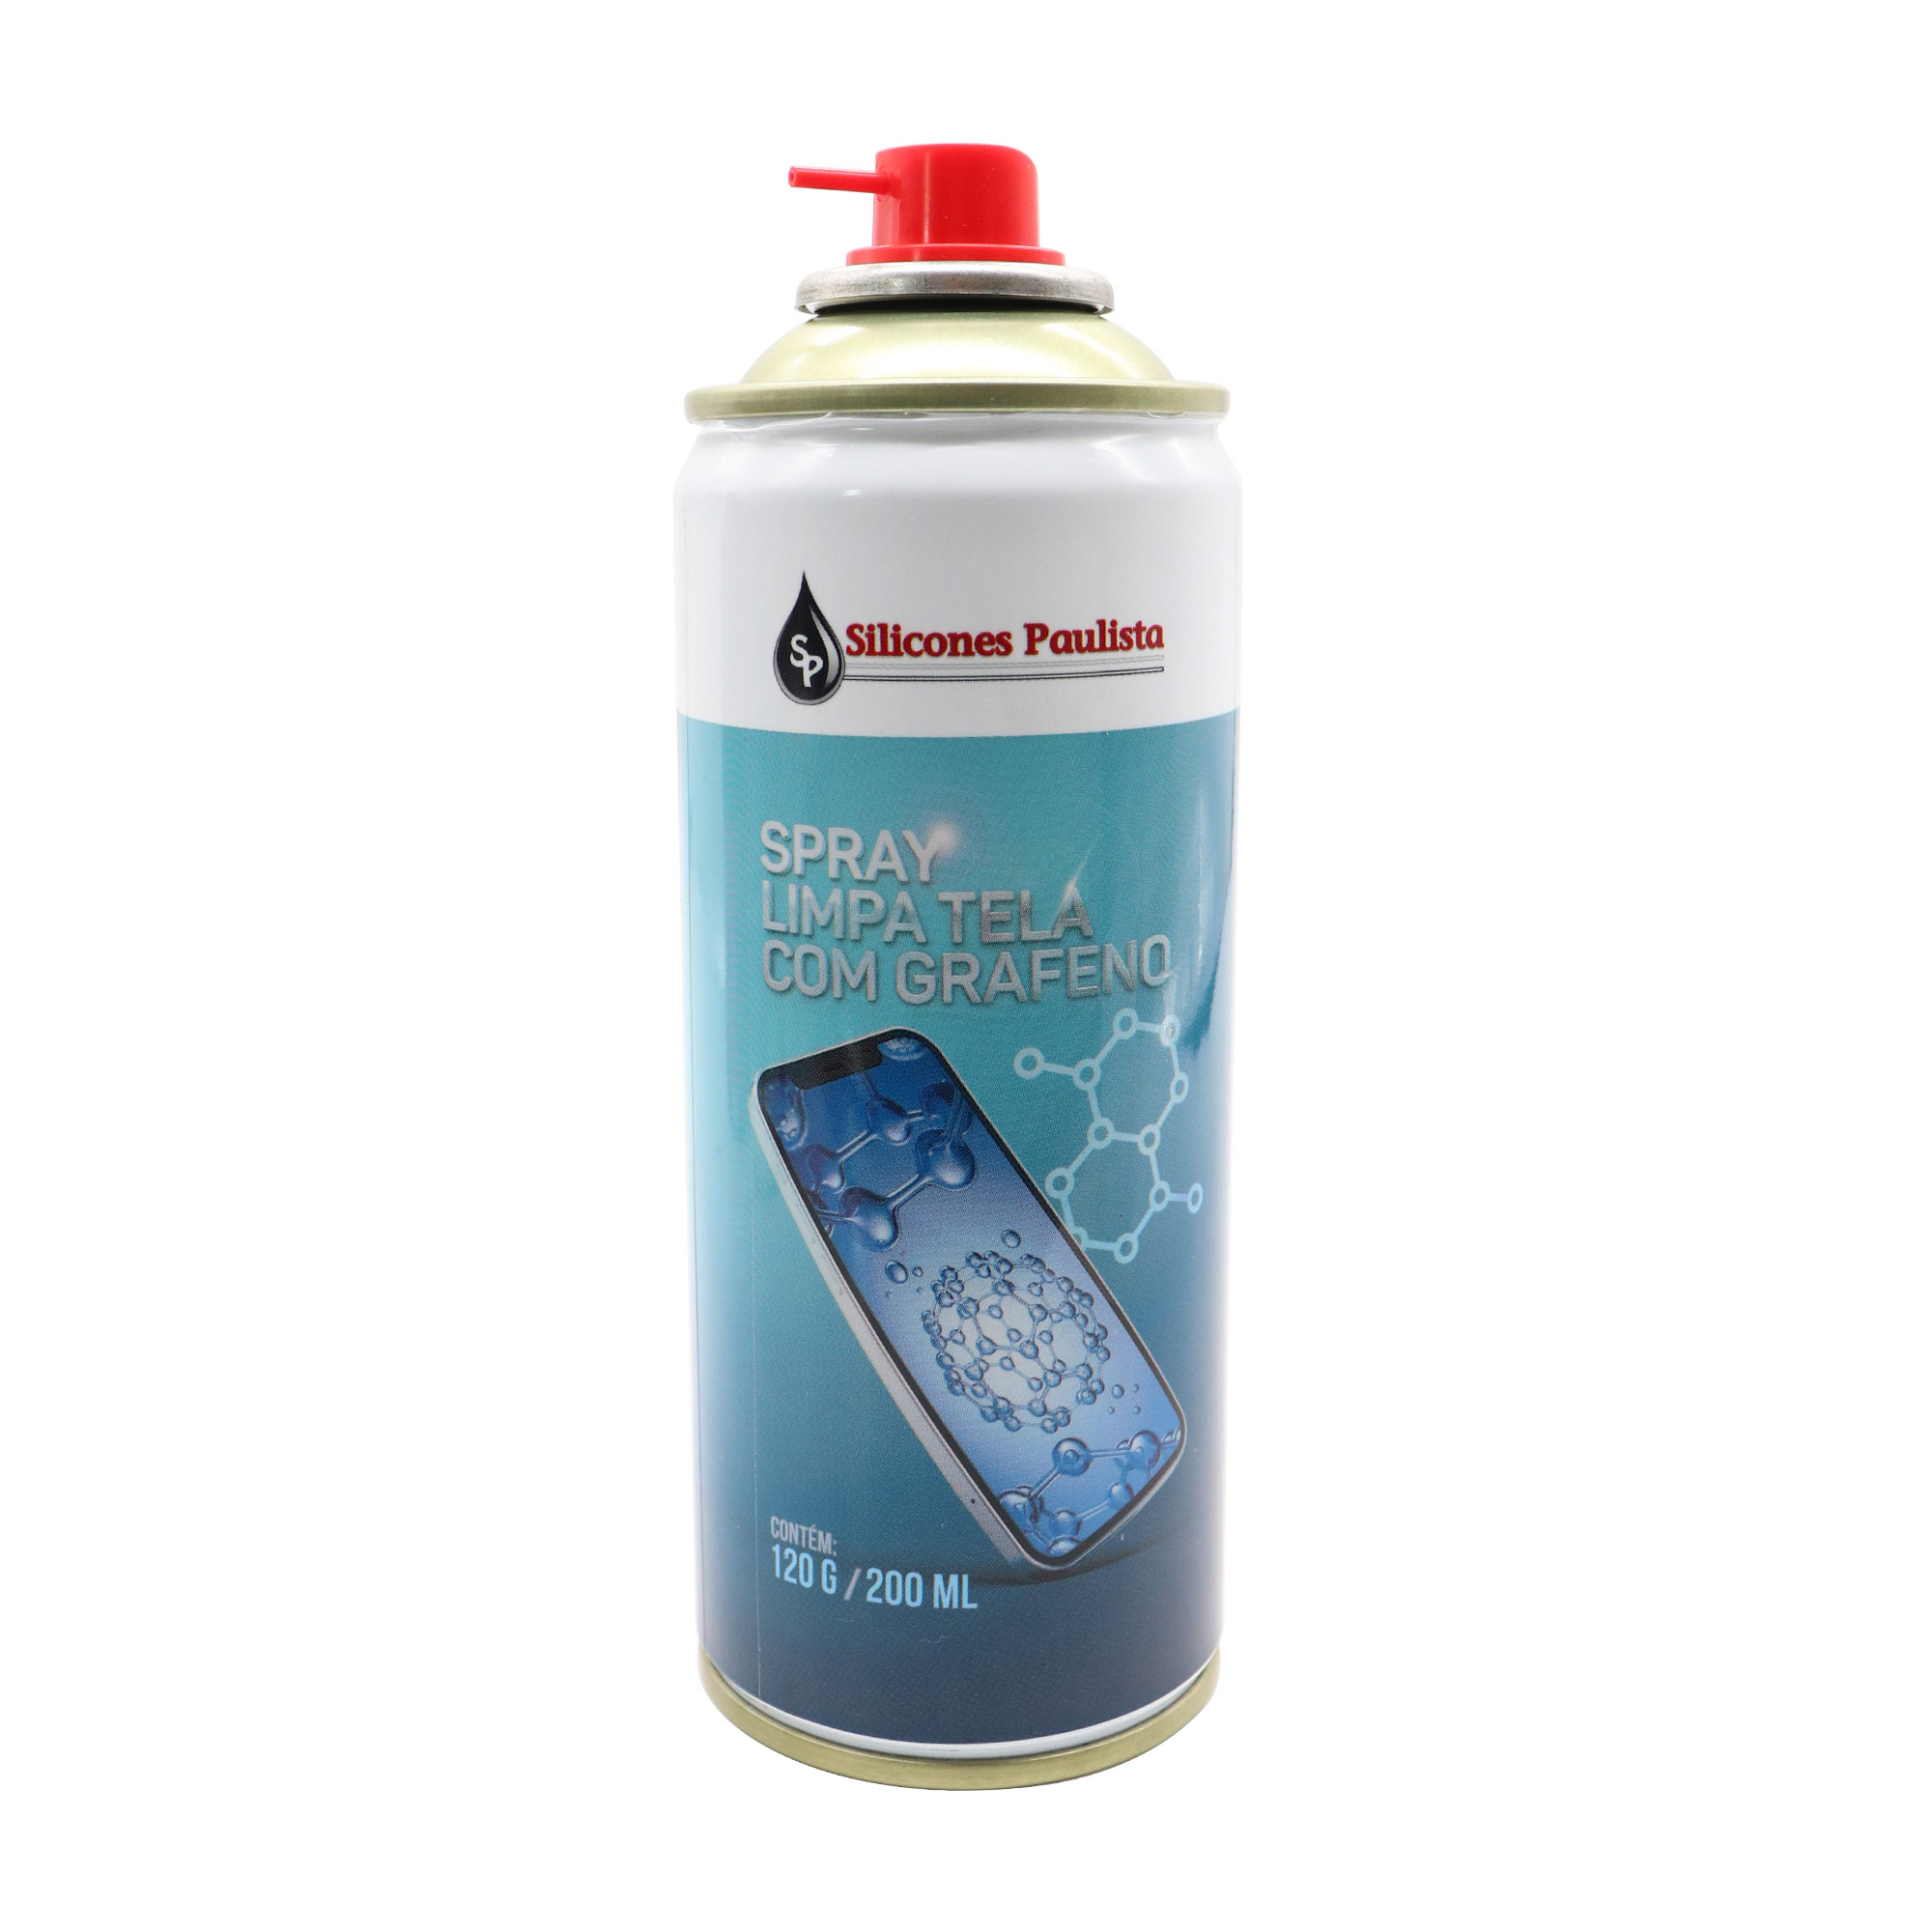 Spray limpa tela com Grafeno 120g/200ml